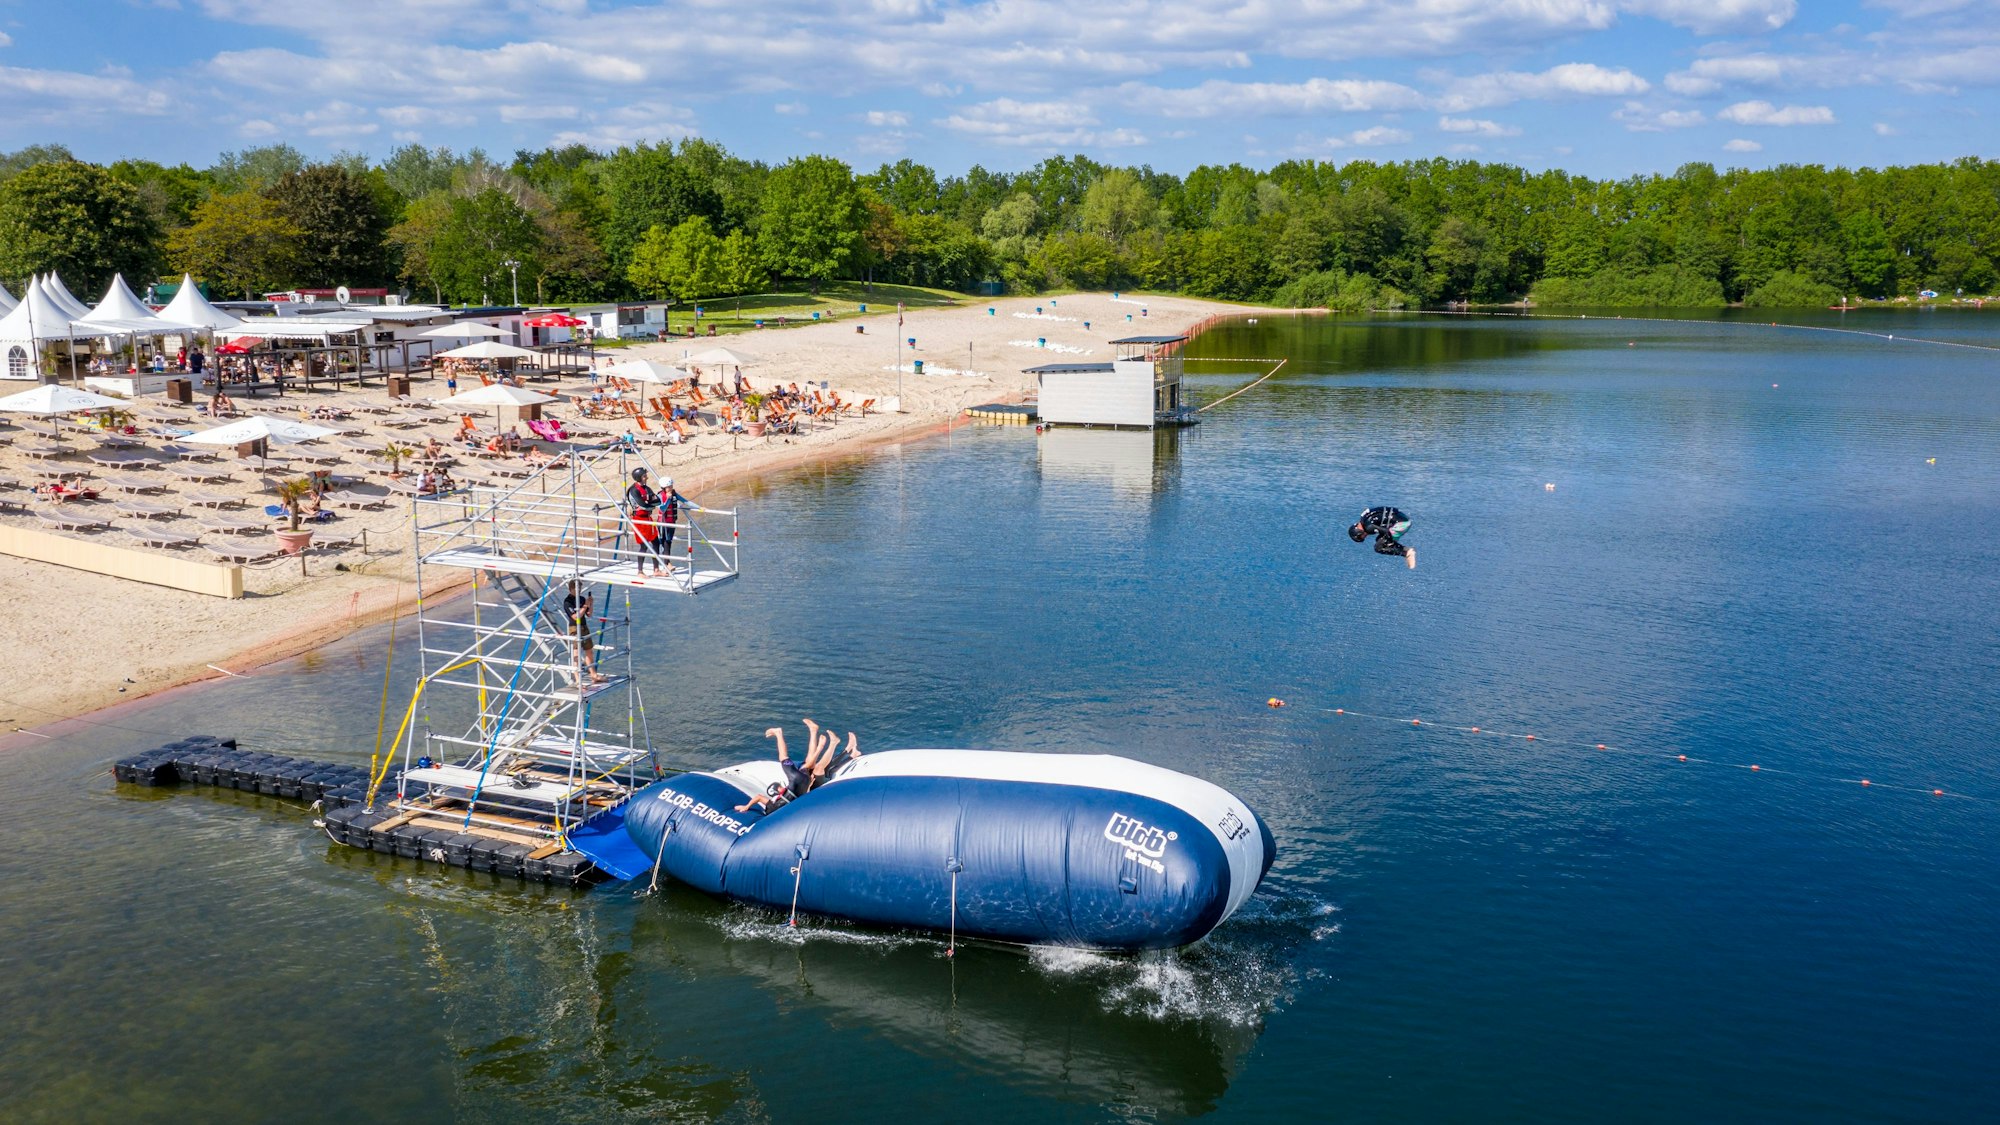 Turmspringer der Splashdiving-Gruppe „Cologne Bombs“ springen am Otto-Maigler-See von einem sogenannten „Blob“ ins Wasser. Hierbei liegen die Personen auf einem Luftkissen und werden in die Luft geschleudert, wenn am hinteren Ende ein oder mehrere Personen auf das Kissen springen.